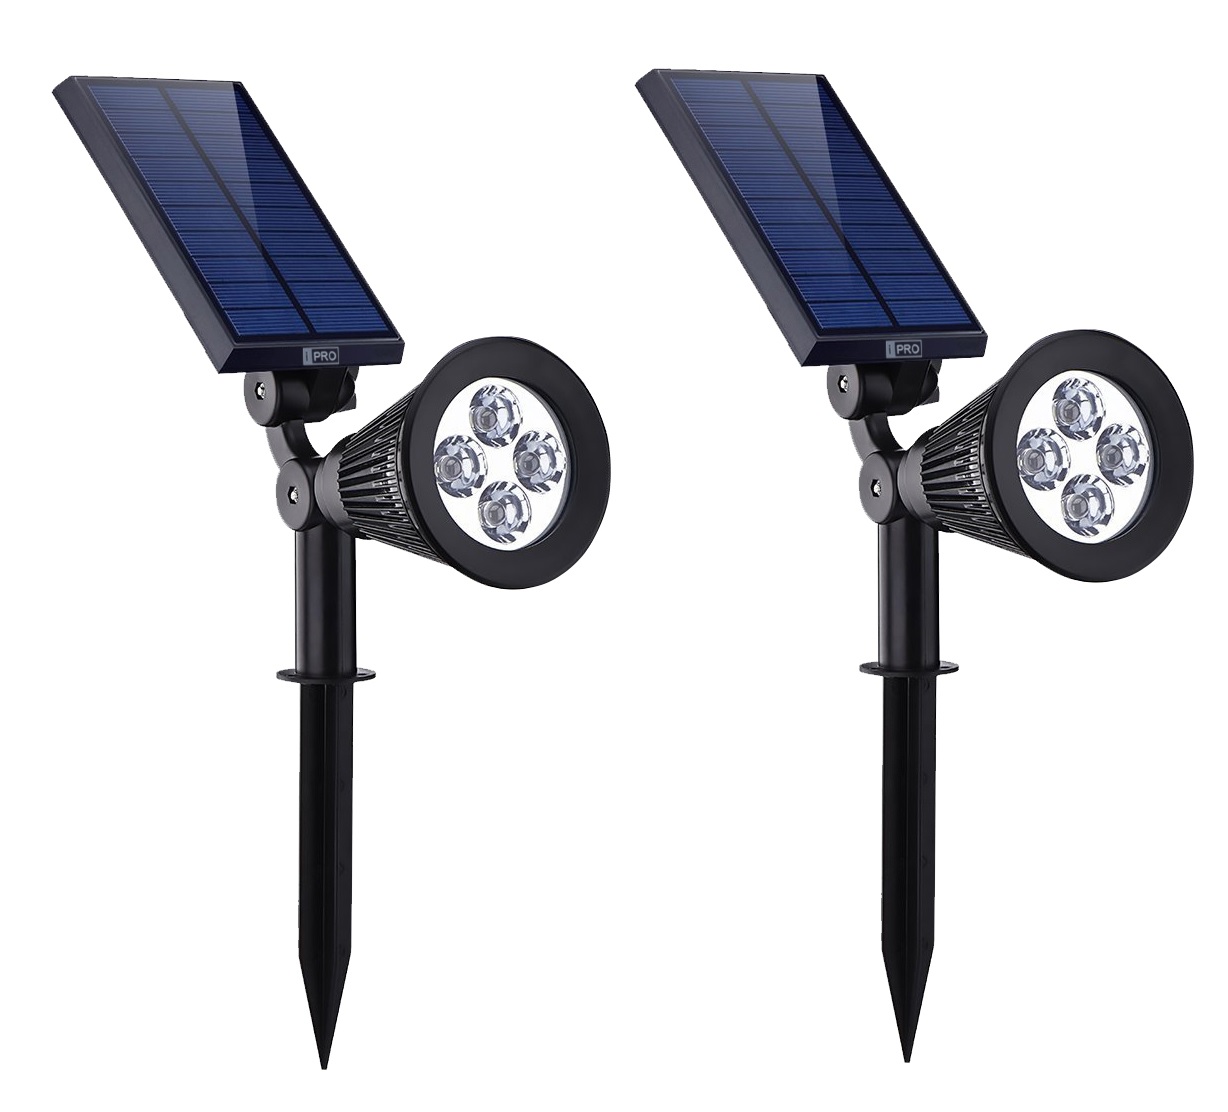 Bezdoteku LEDSolar 4 solární venkovní světlo svítidlo do země 2 ks, 4 LED, bezdrátové, iPRO, 1W, studená barva